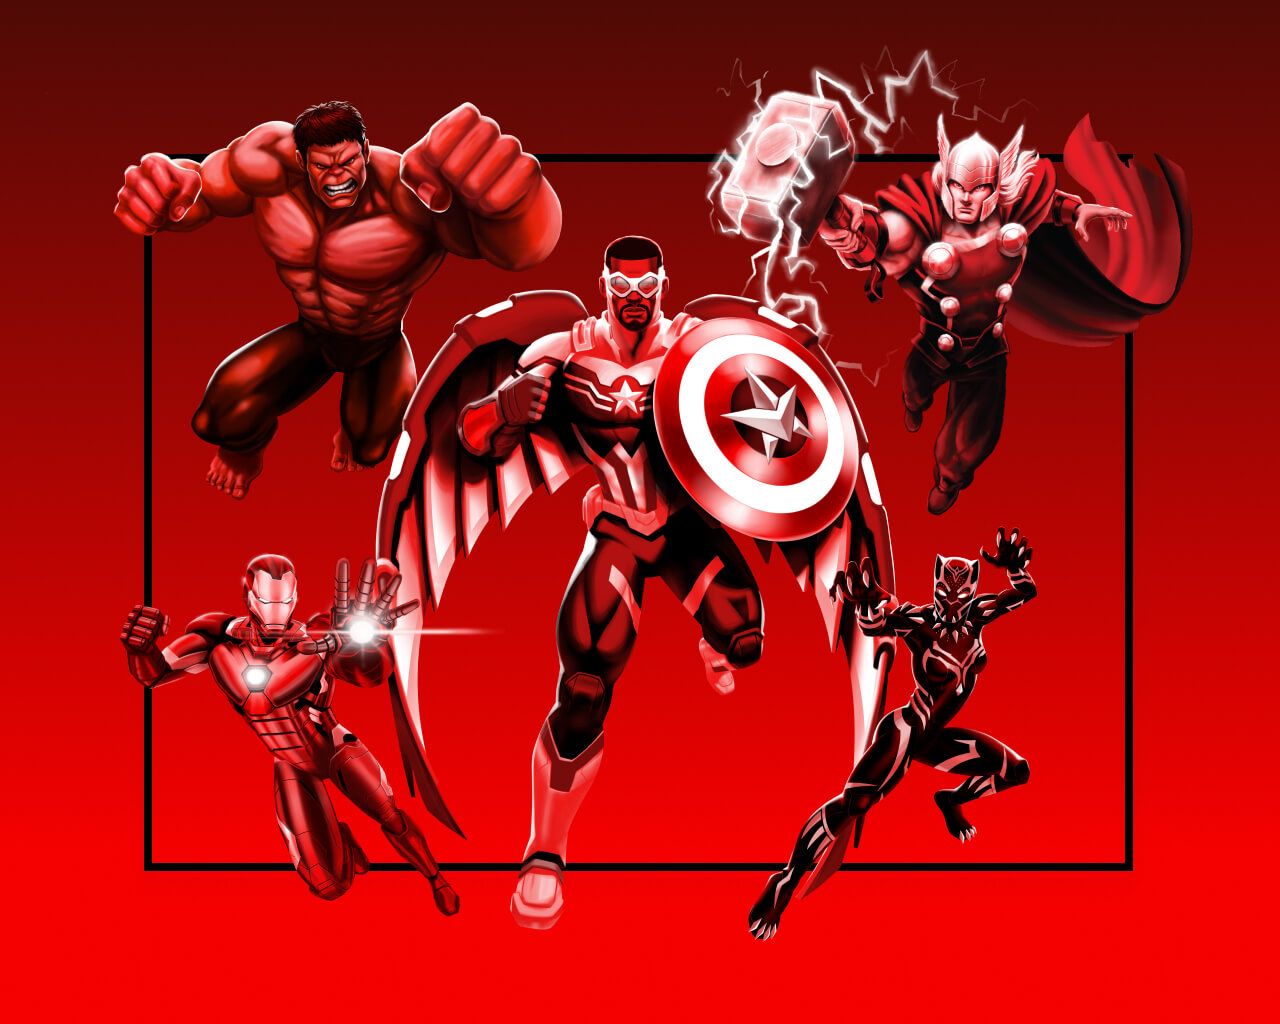 El capitán América al centro, a su izquierda se encuentran Hulk y Iron-Man listos para atacar. Y a su derecha Thor y Black Panther sobre un fondo rojo.